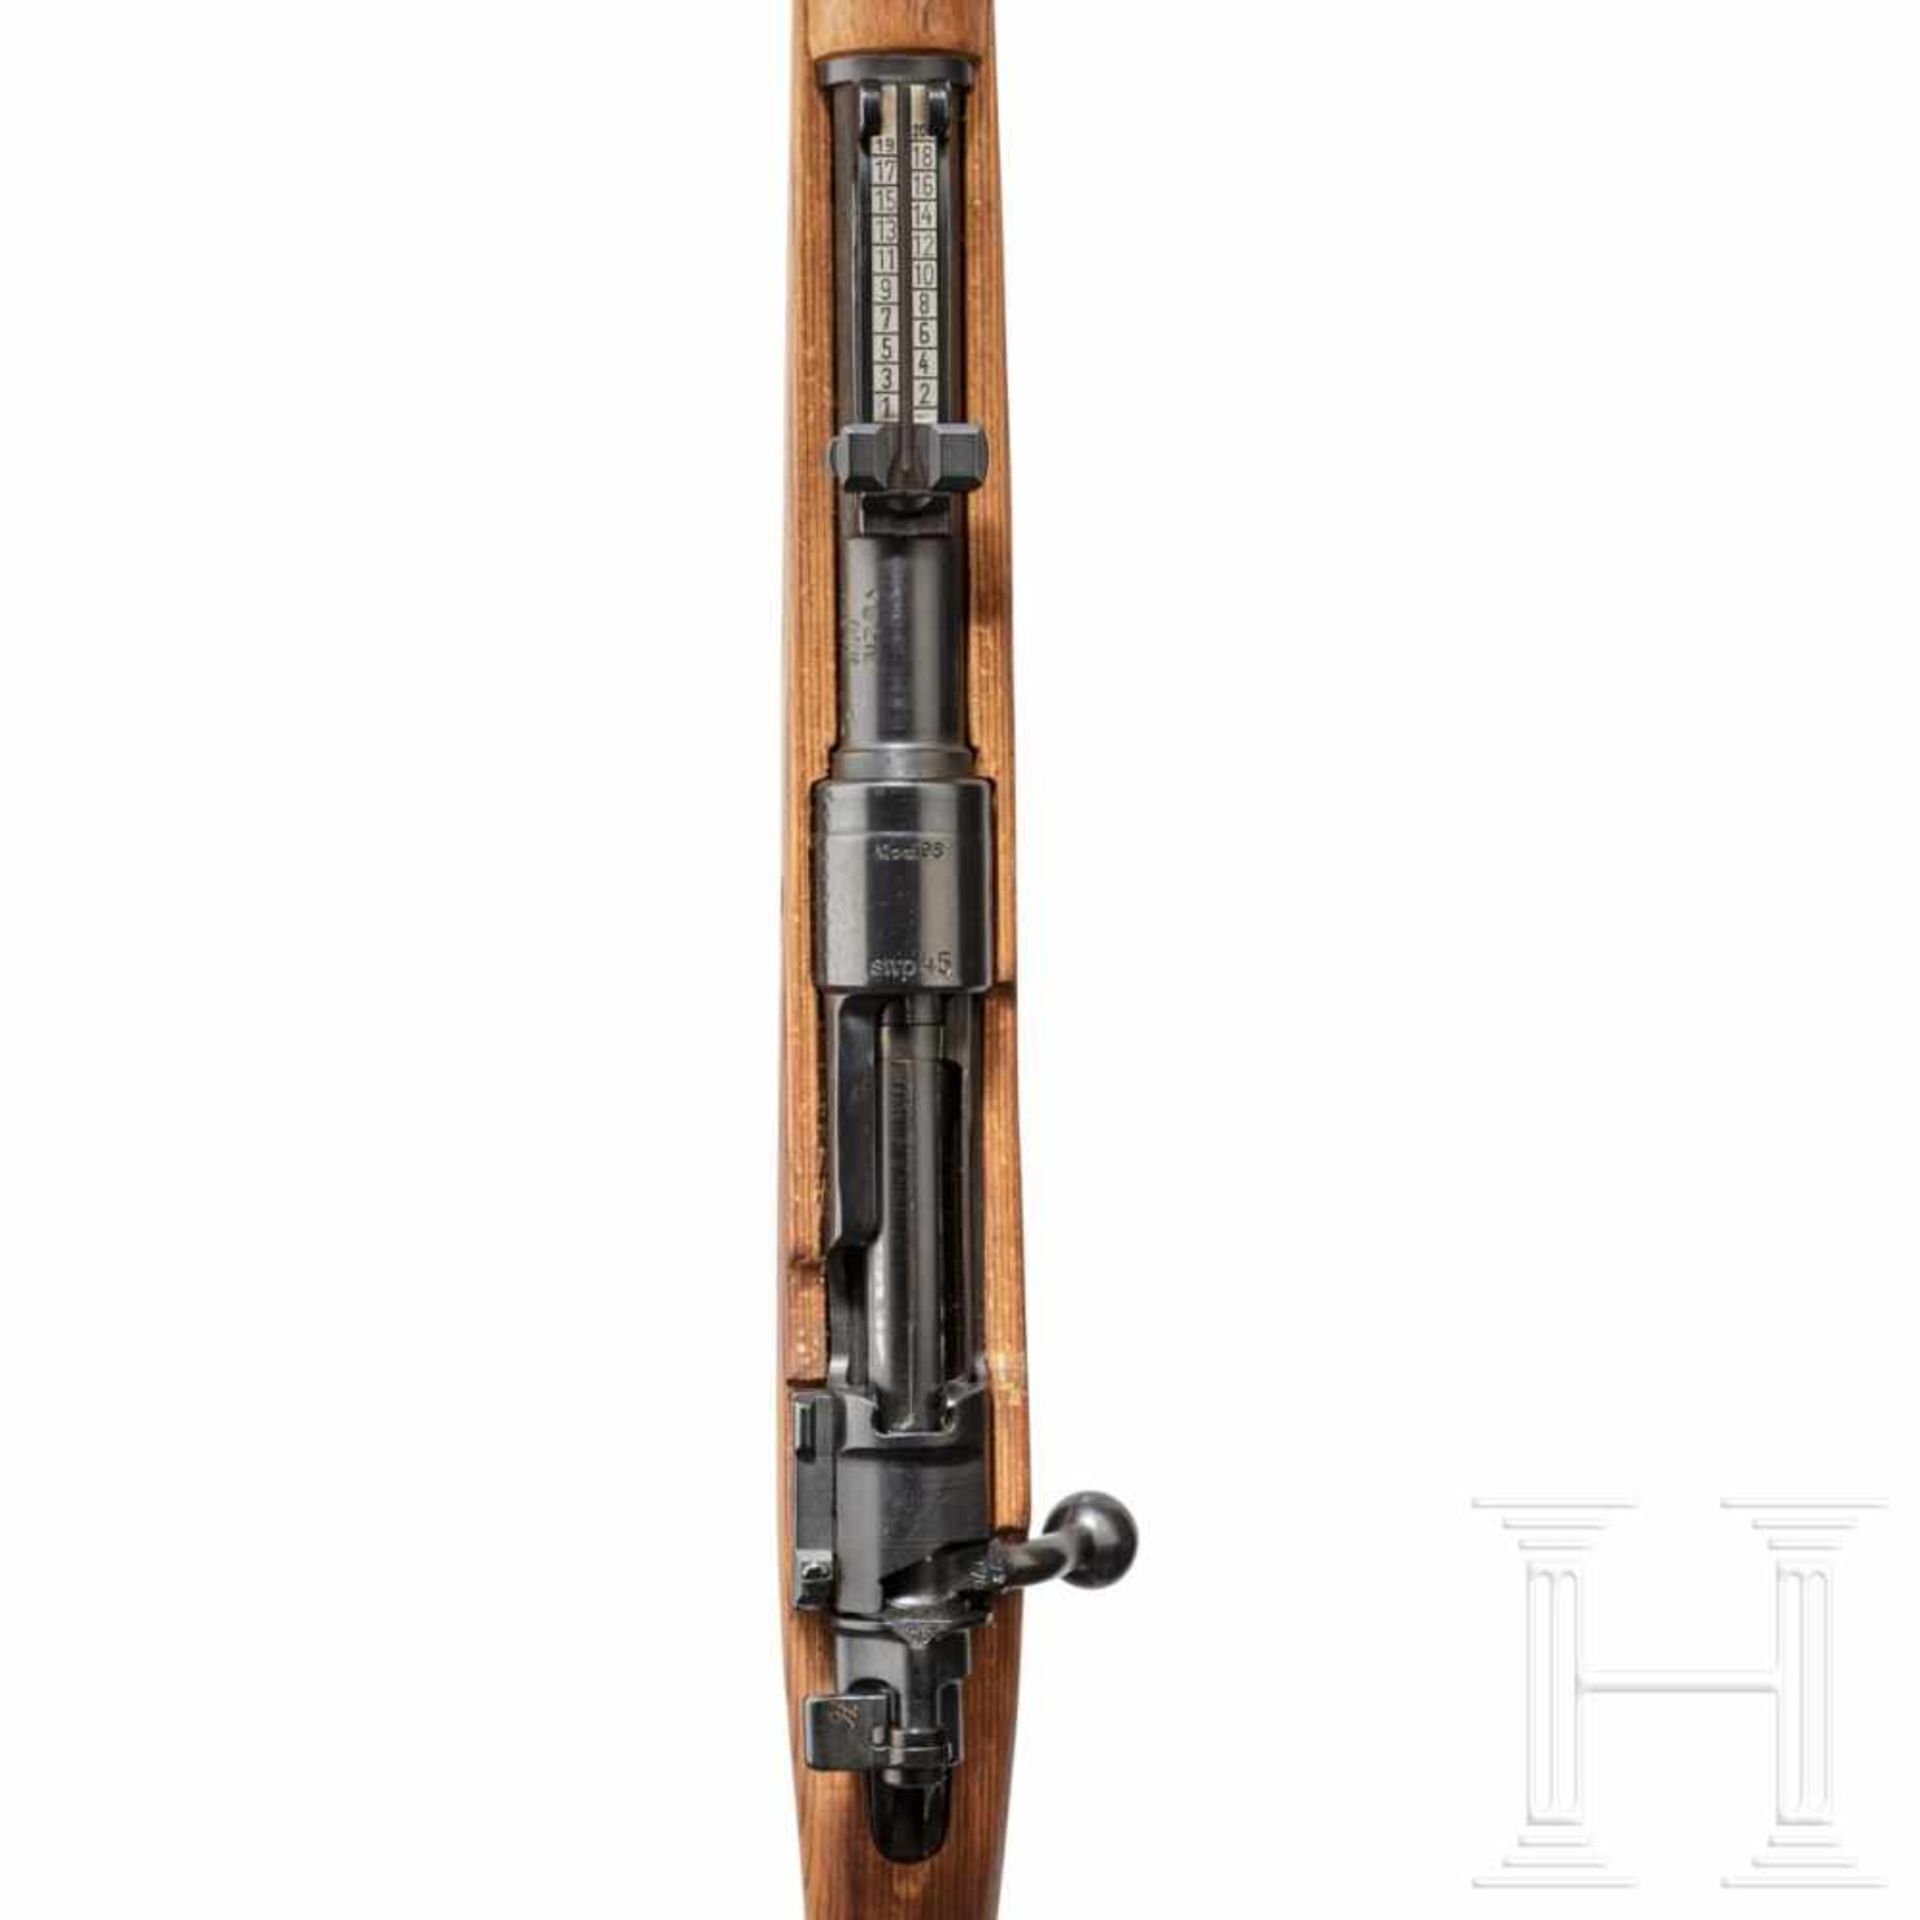 A carbine 98 k, code "swp - 45"Kal. 8x57 IS, Nr. 73376a, nummerngleich bis auf Visierblatt. - Bild 2 aus 3